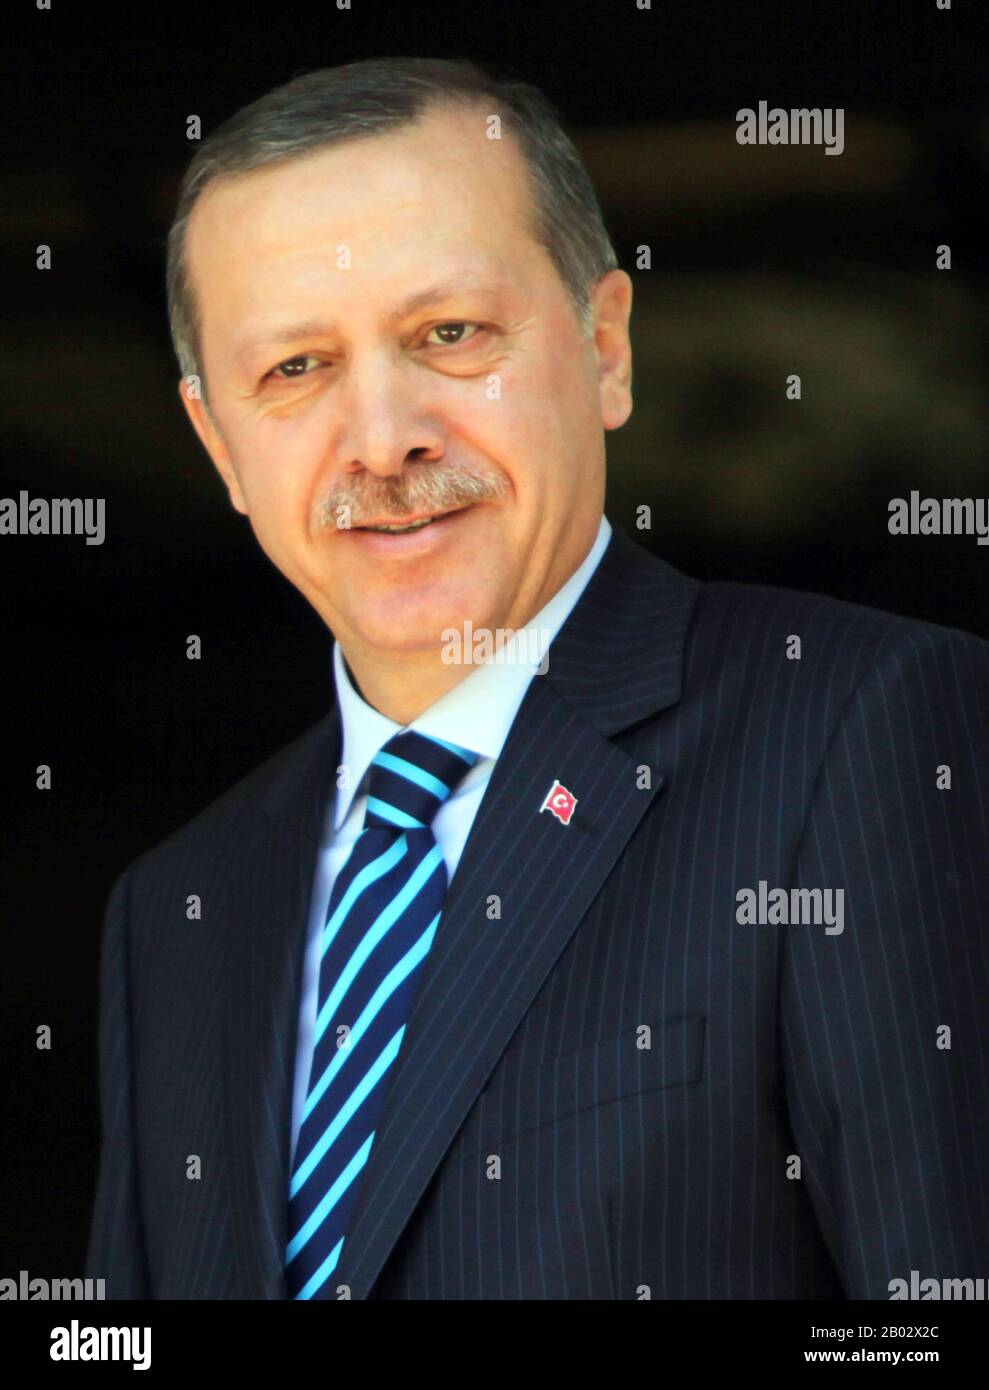 Recep Tayyip Erdogan (sopportato il 26 febbraio 1954) è il 12th ed attuale presidente della Turchia, in carica dal 2014. In precedenza è stato primo Ministro della Turchia dal 2003 al 2014 e sindaco di Istanbul dal 1994 al 1998. Partendo da un contesto politico islamico e affermando di essere un democratico conservatore, la sua amministrazione ha supervisto politiche economiche liberali e socialmente conservatrici. Foto Stock